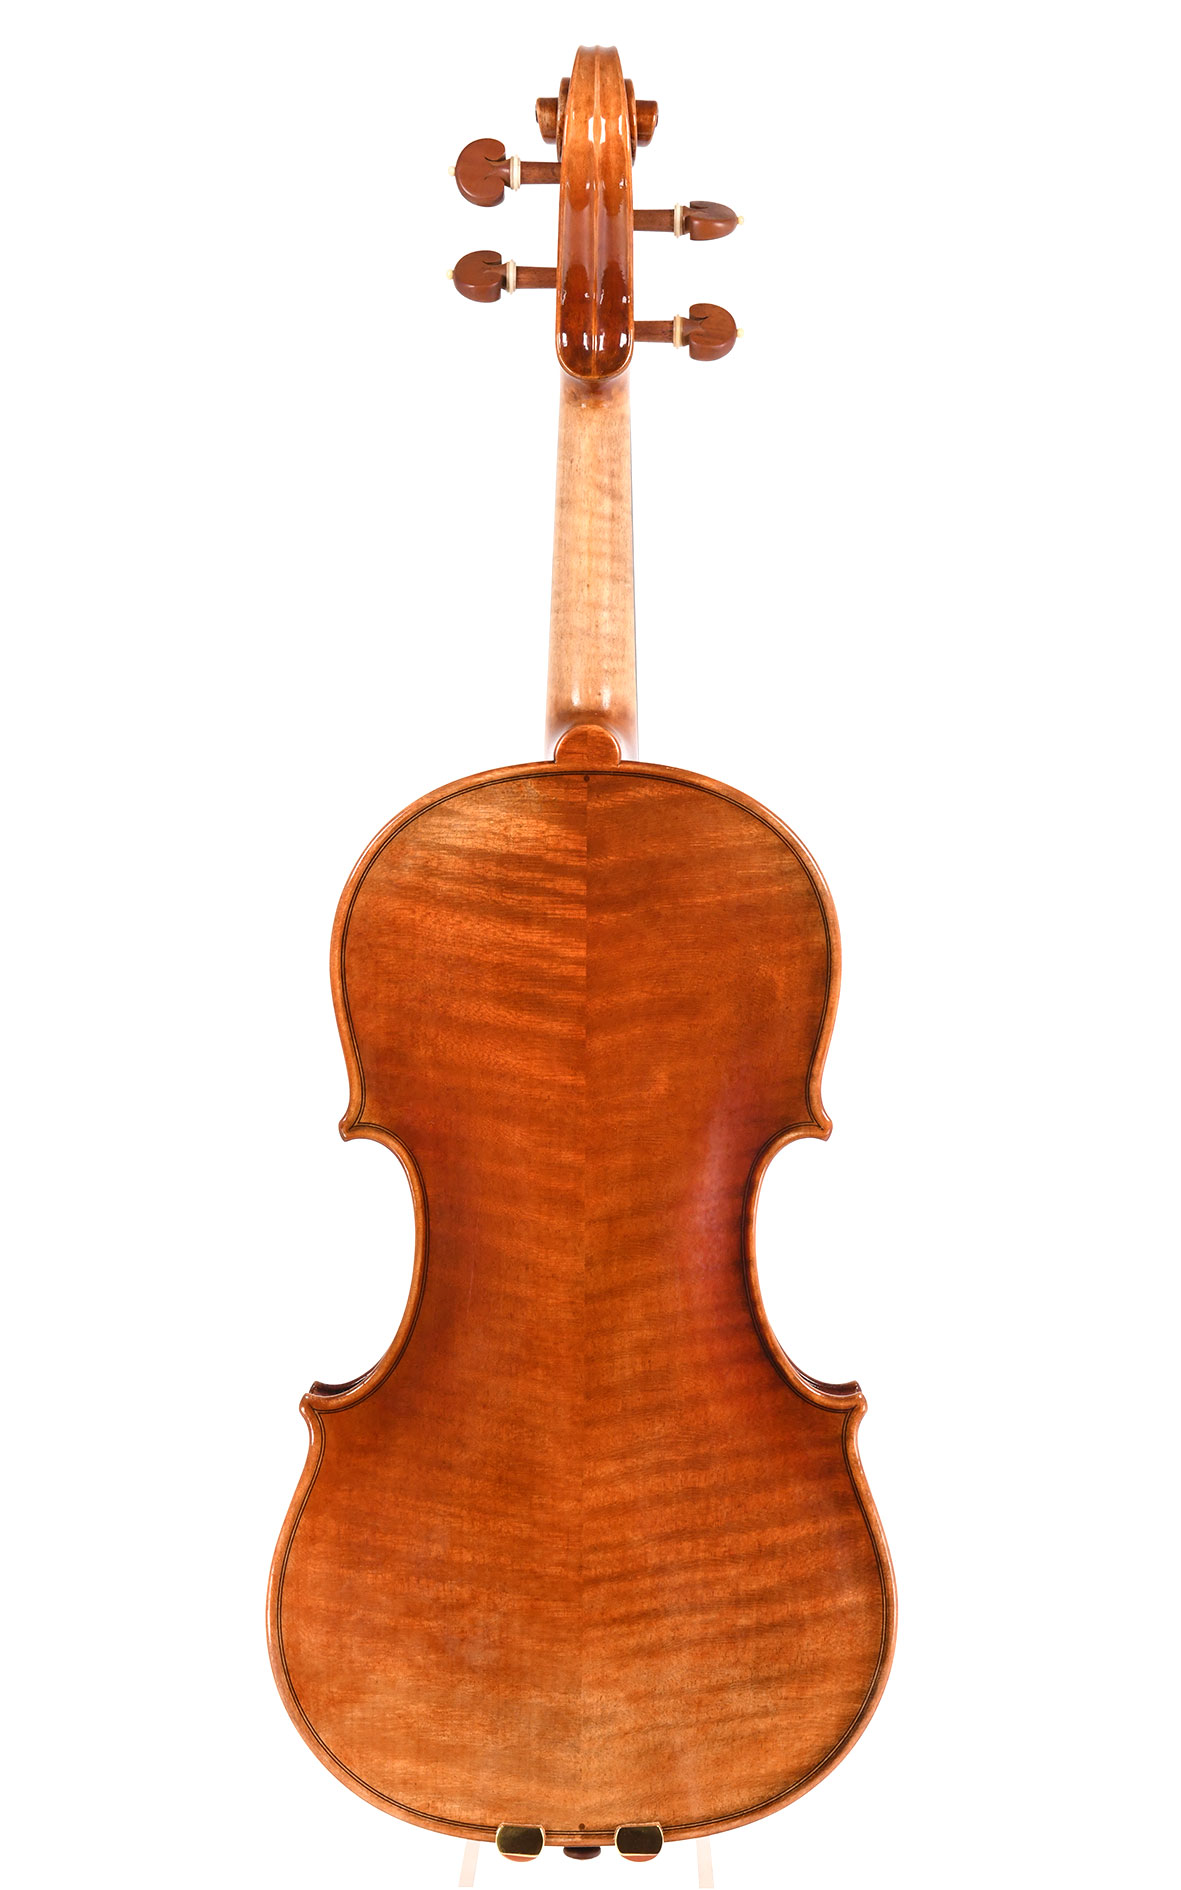 Chinesische Geige aus dem CV Selectio portfolio